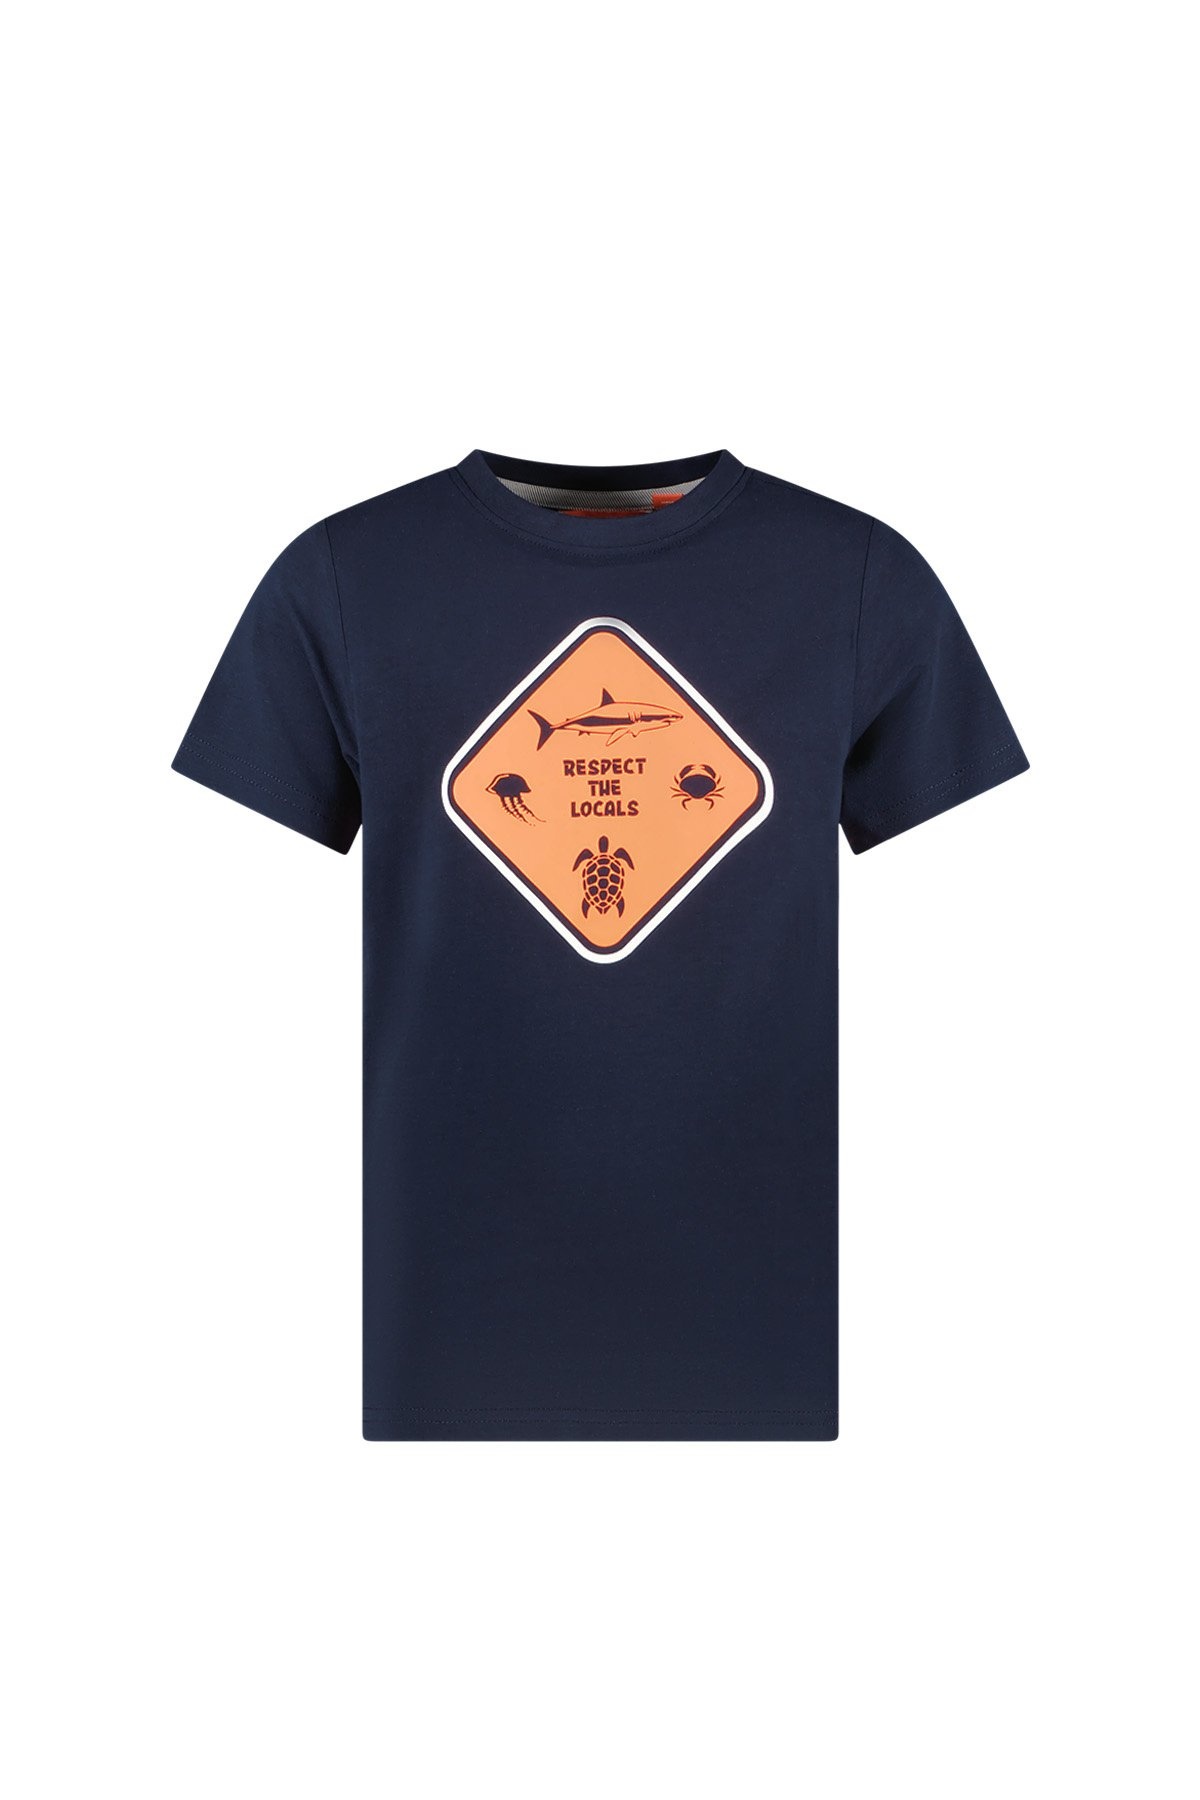 TYGO & vito X403-6425 Jongens T-shirt - Navy - Maat 110-116